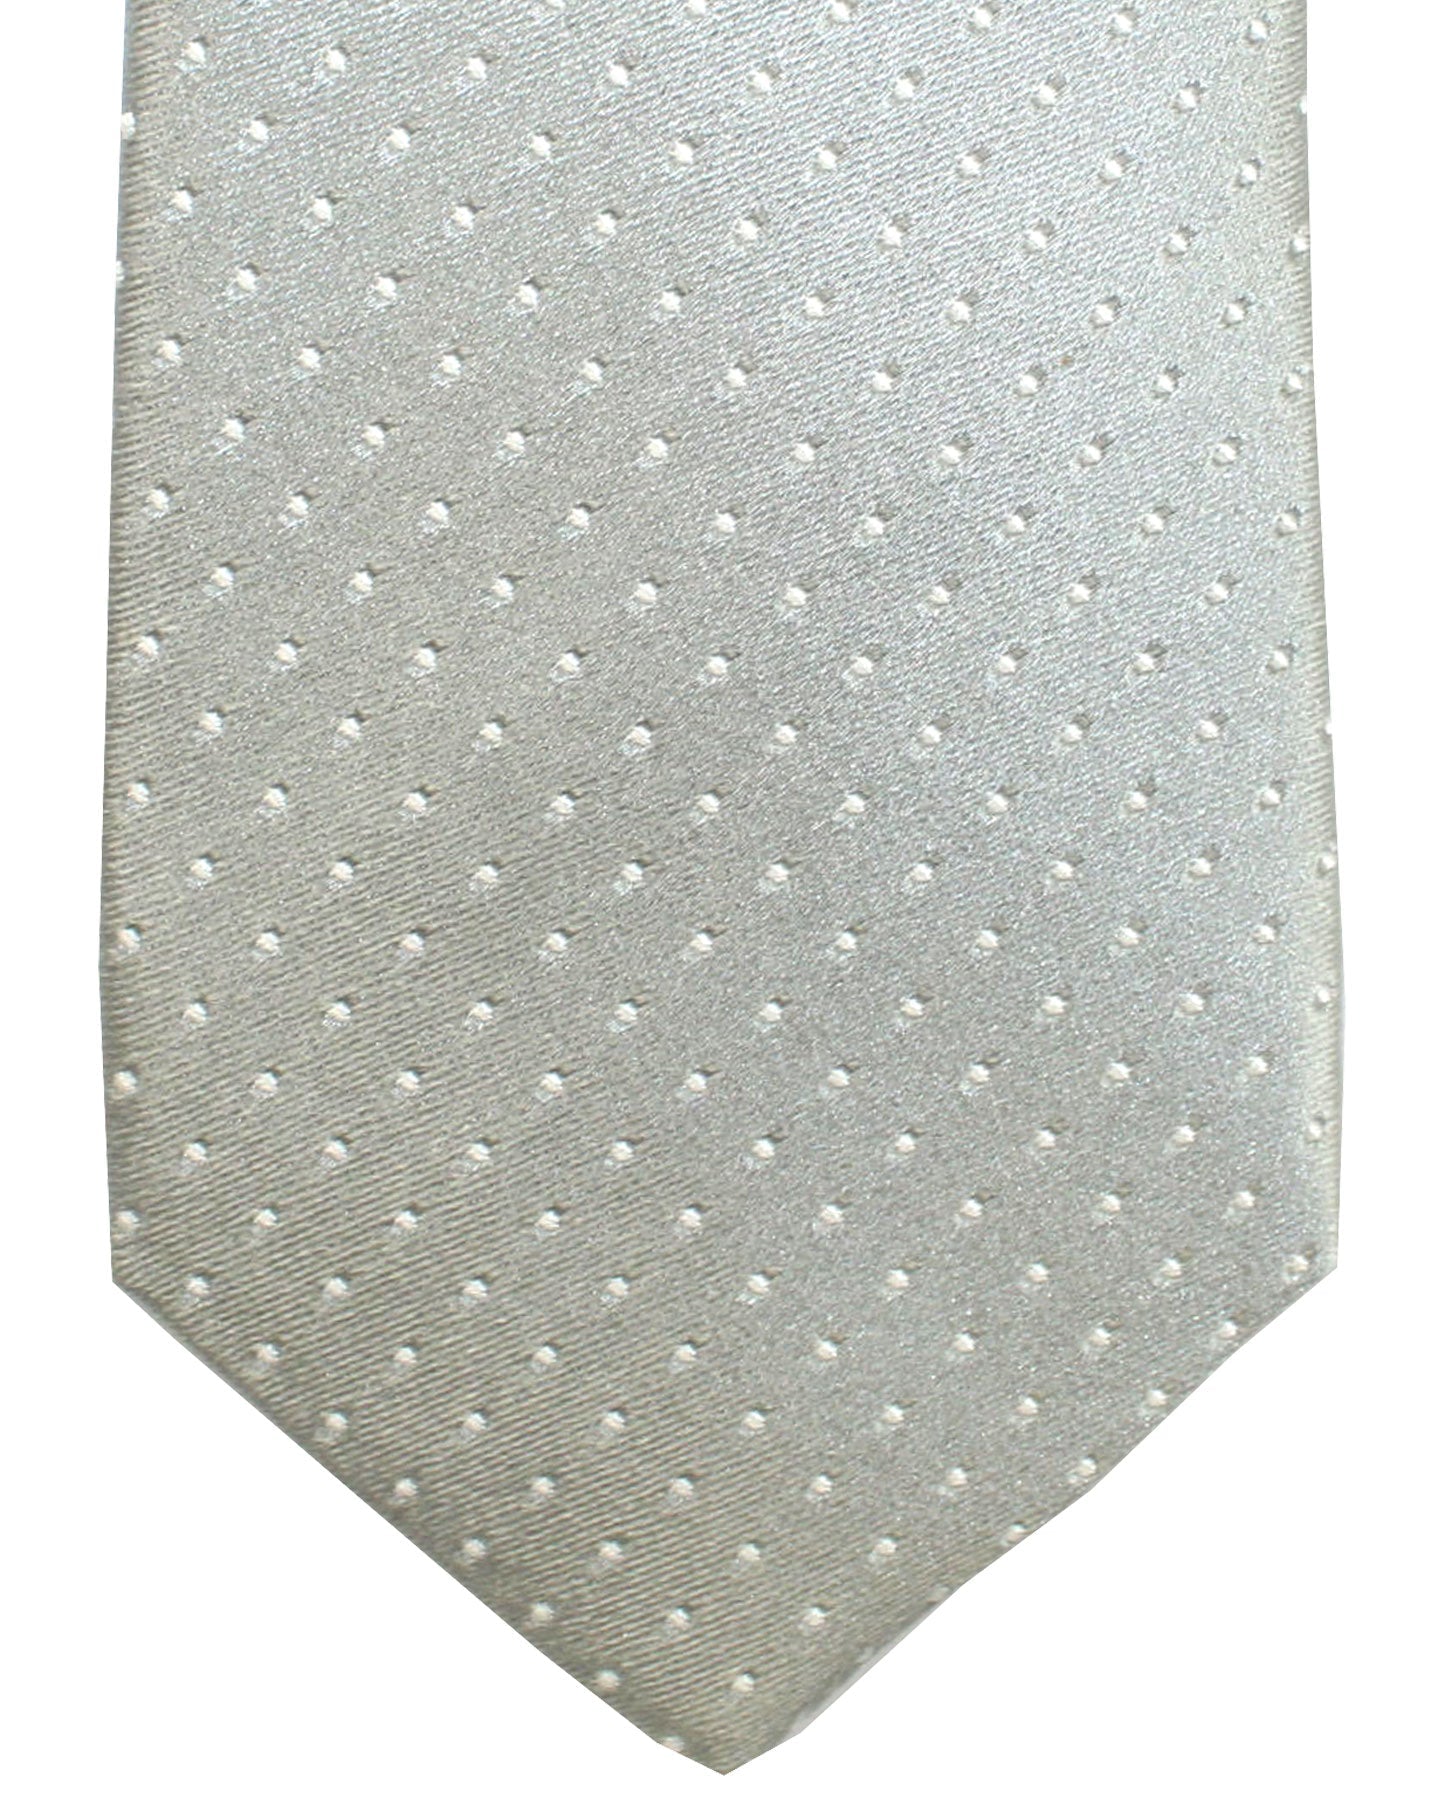 Ungaro Silk Tie Gray Micro Dots - Narrow Cut Designer Necktie